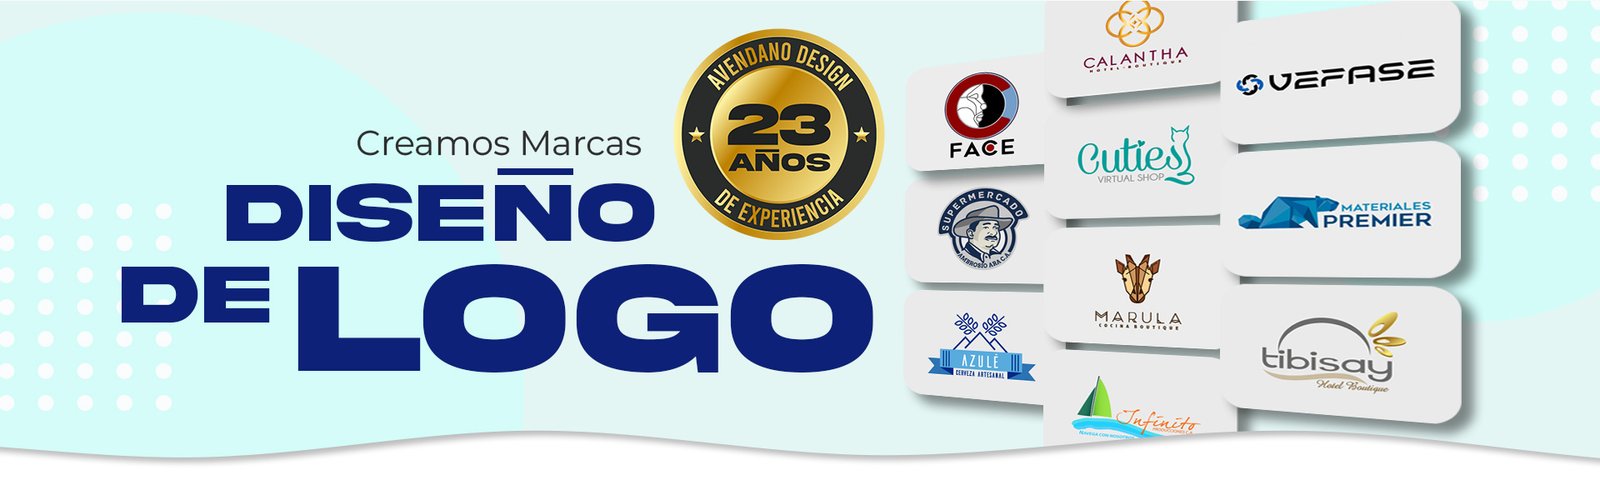 Agencia diseño de logos y logotipos en Venezuela